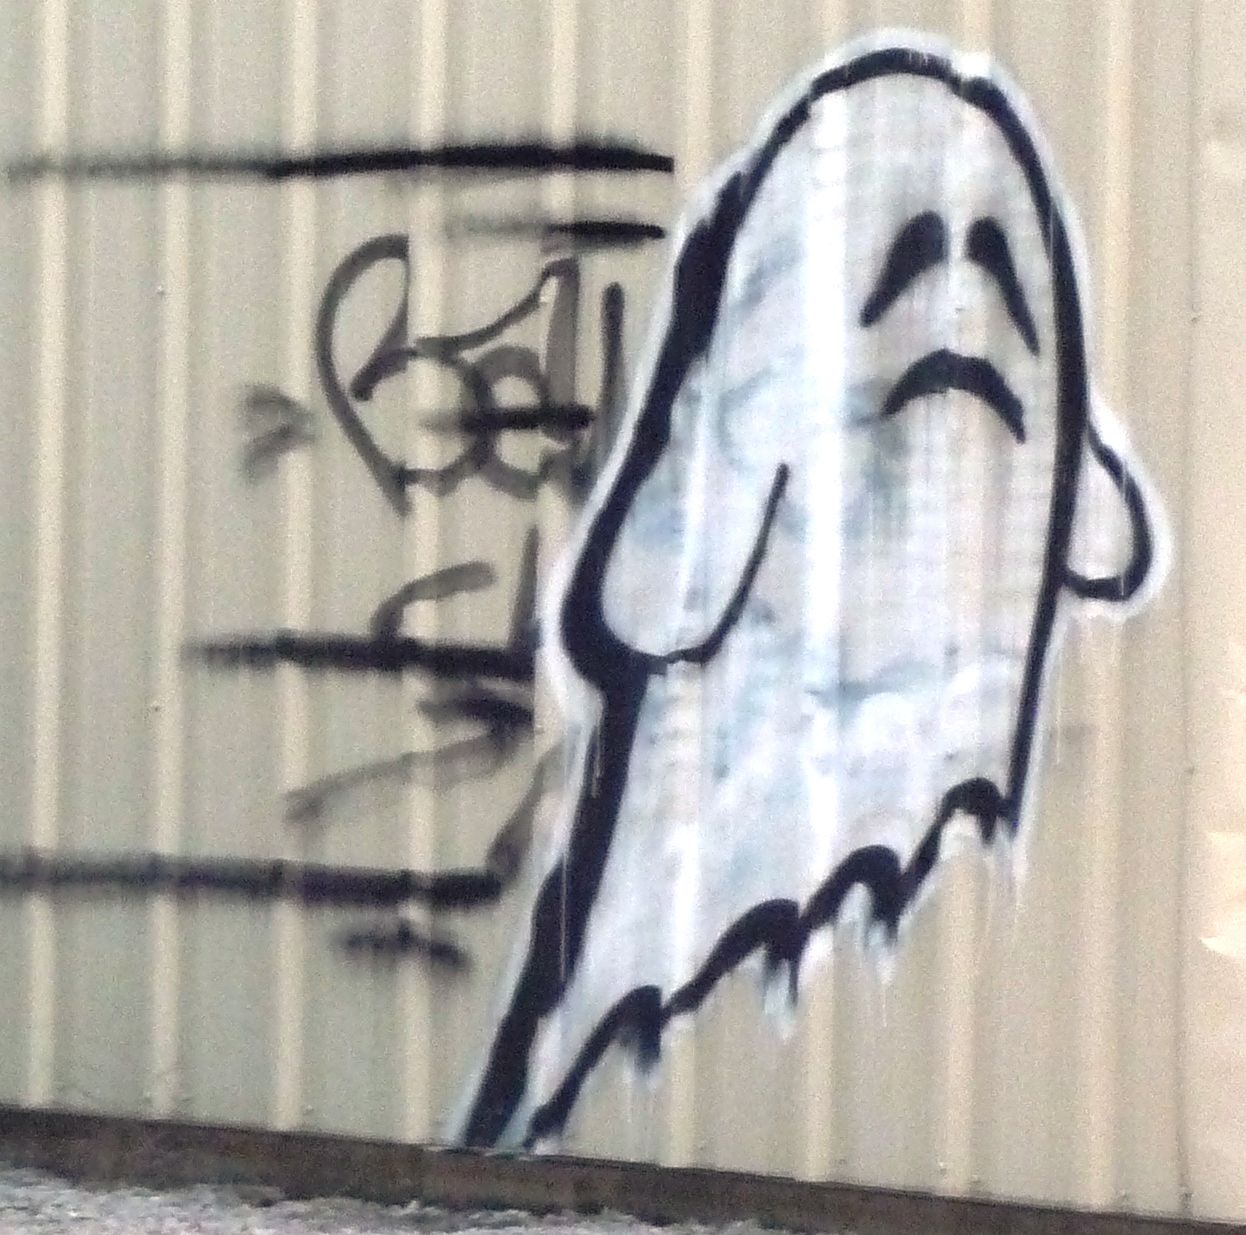 ghost face graffiti